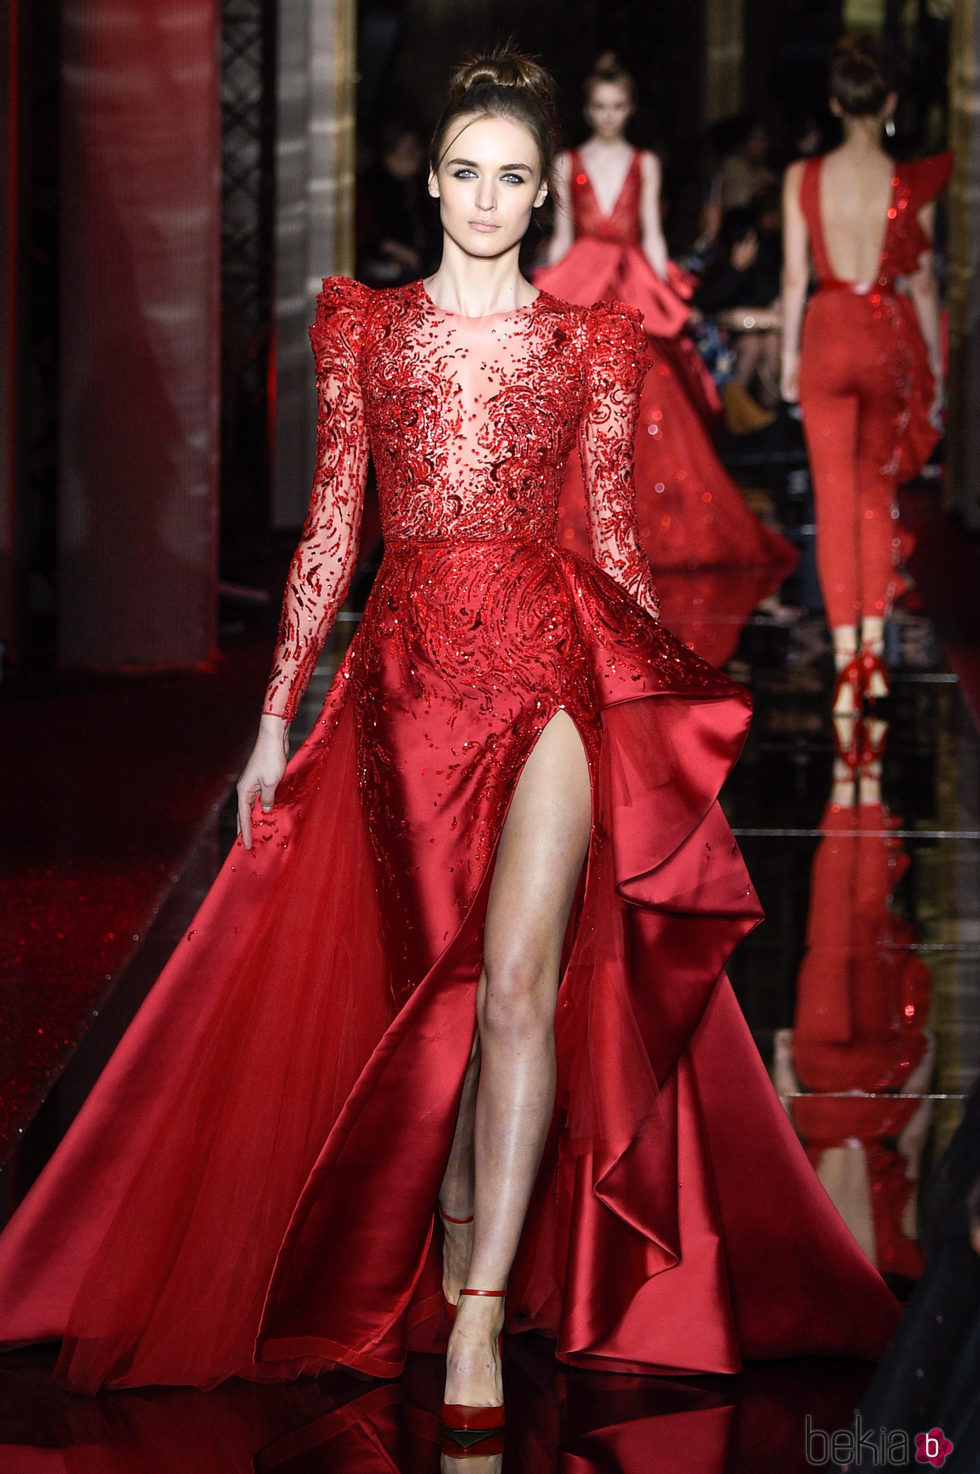 Vestido rojo intenso de Zuhair Murad primavera/verano 2017 en la Semana de la Alta Costura de París